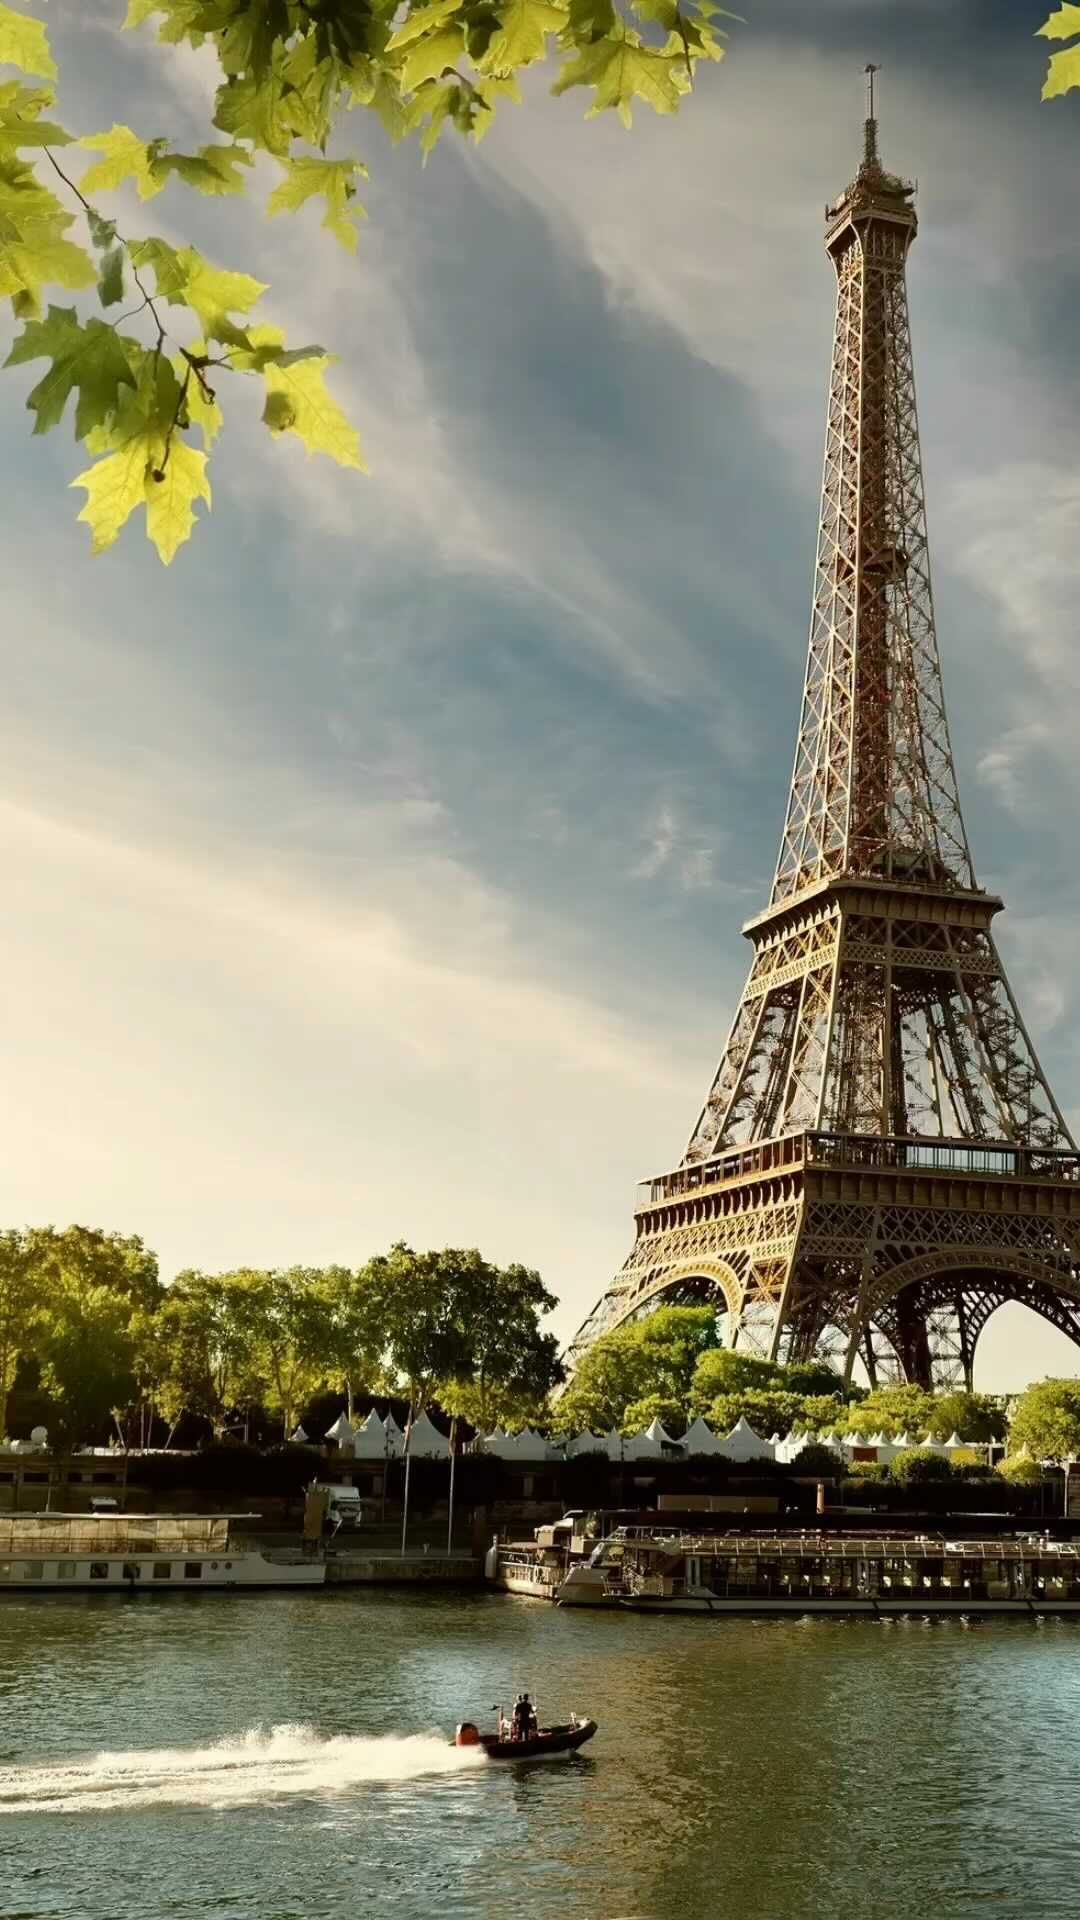 “Paris is a magical pivot point. It’s life inside …